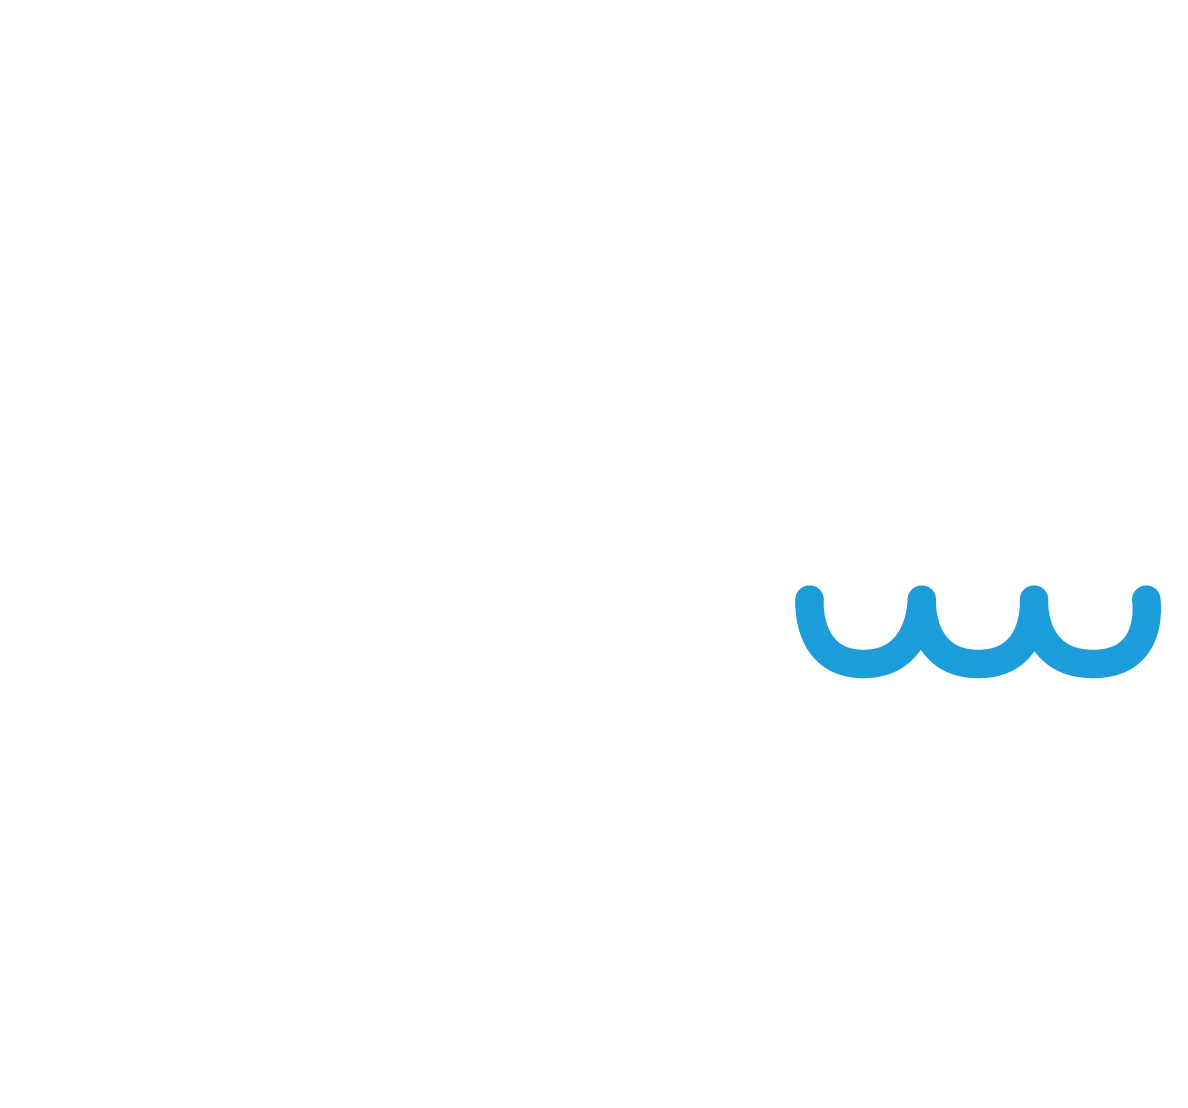 RVG Infra